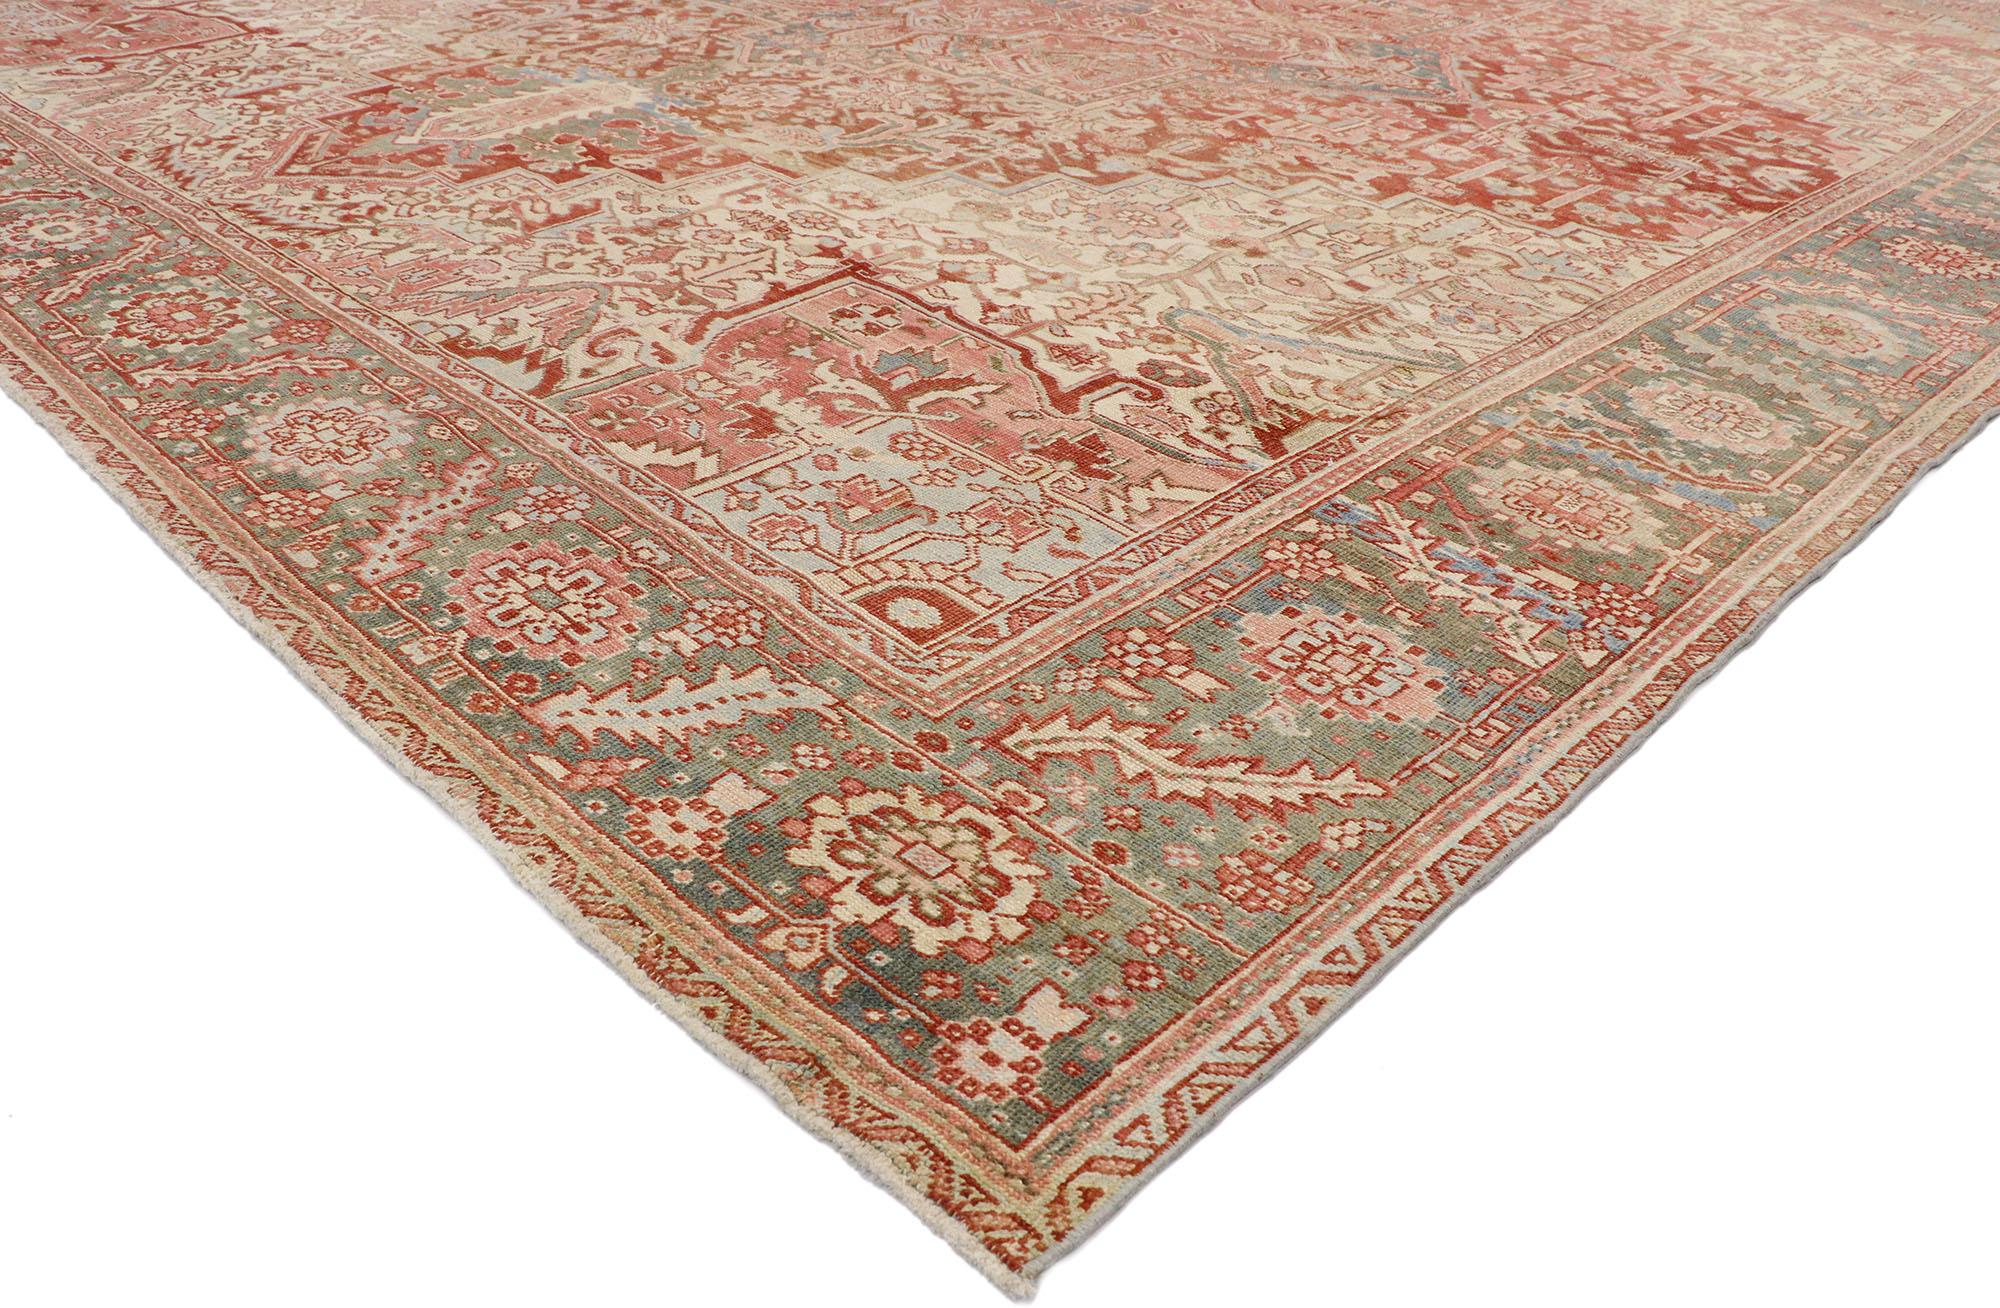 53245 Tapis Persan Heriz antique, 11'08 x 13'08. Les tapis persans Heriz, originaires de la région de Heris, au nord-ouest de l'Iran, sont appréciés pour la précision de leurs motifs géométriques et le détail de leurs contours. Ces tapis, fabriqués